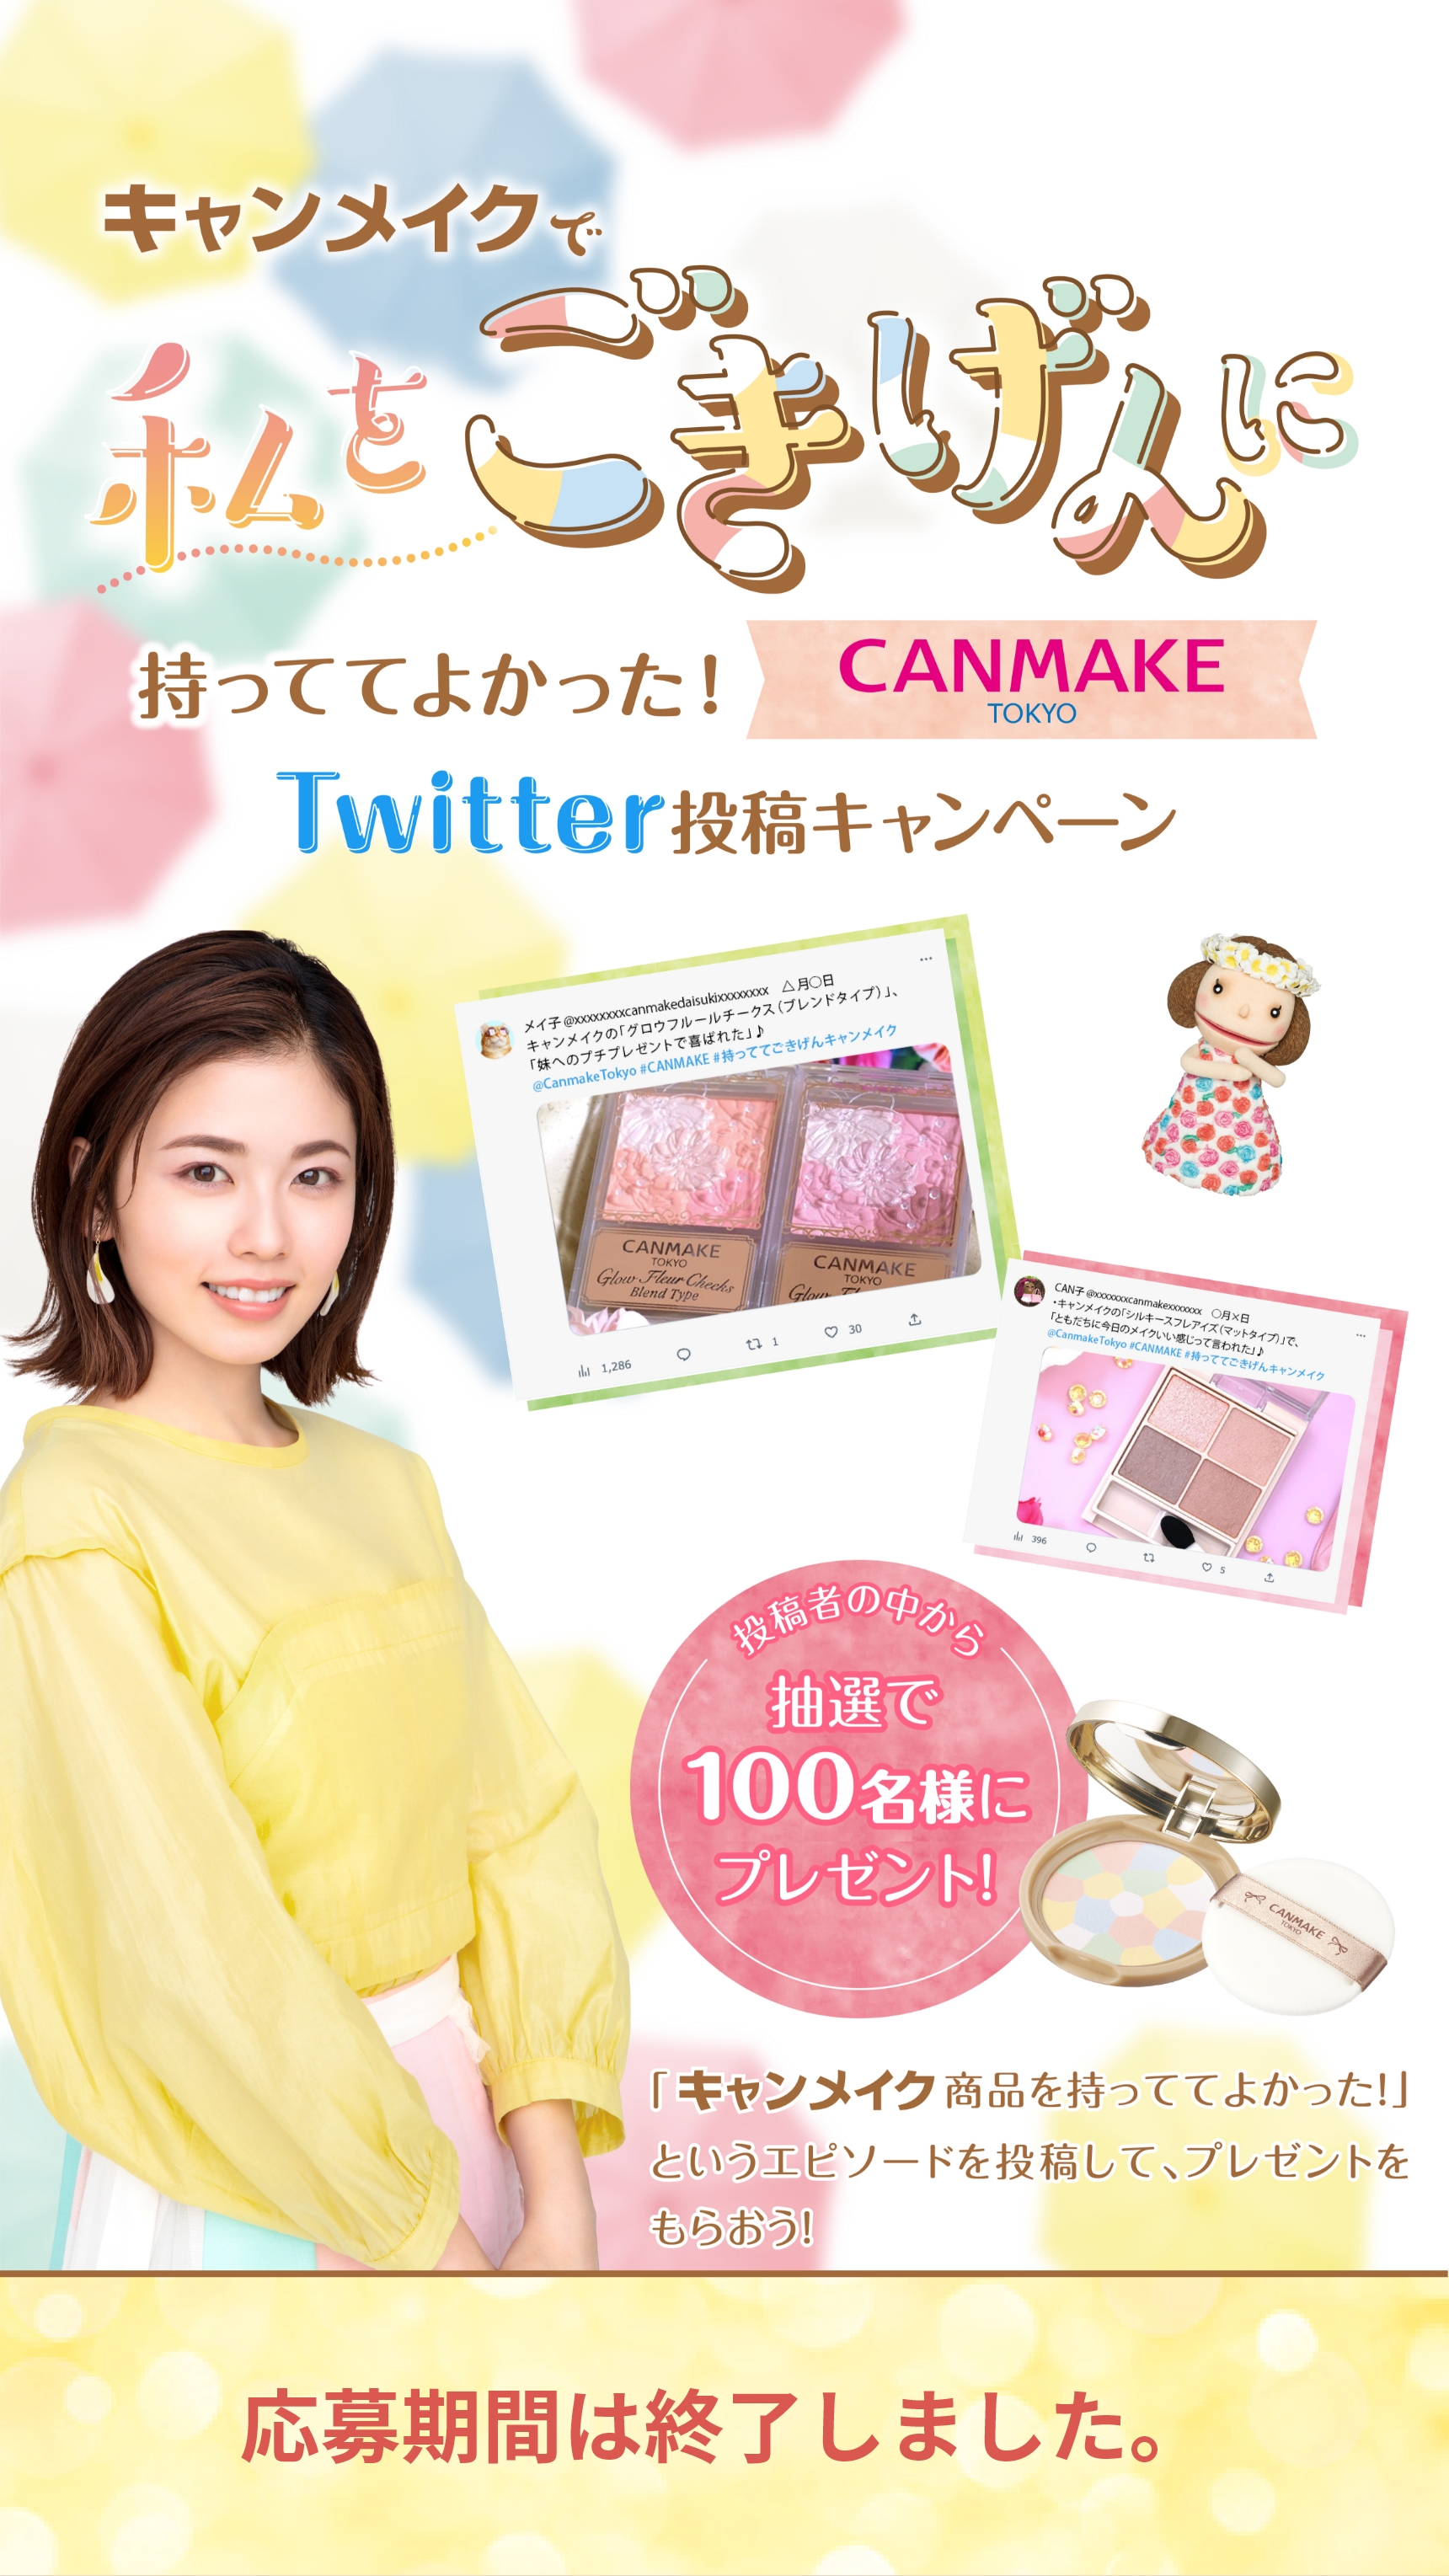 キャンメイクで私をごきげんに 持っててよかった！CANMAKE TOKYO Twitter投稿キャンペーン キャンペーン期間 2023.3.31金～4.20木